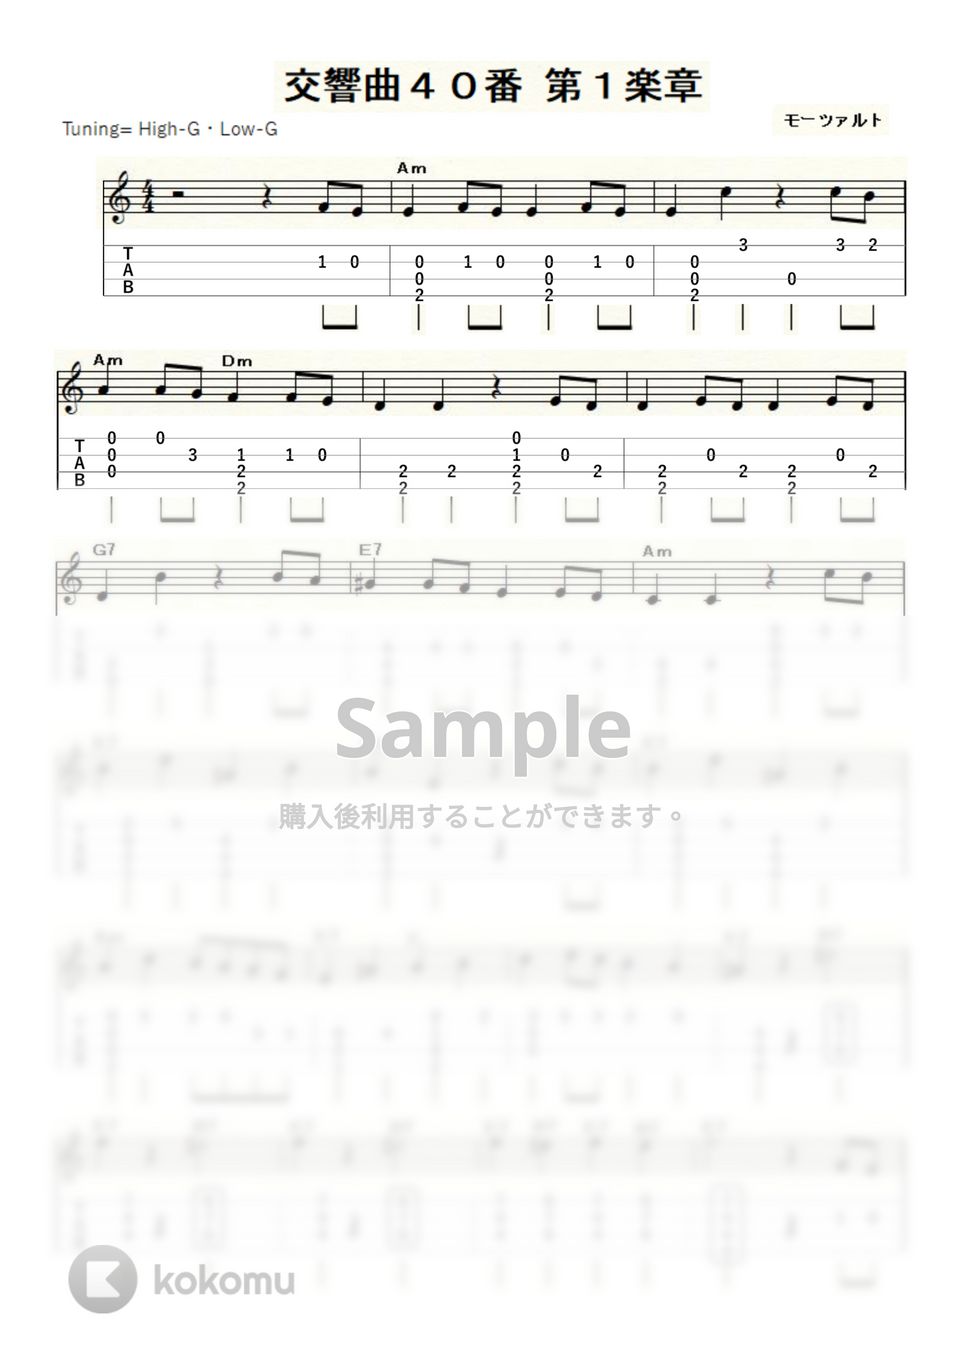 モーツァルト - モーツァルトの交響曲40番 (ｳｸﾚﾚｿﾛ / High-G,Low-G / 中級) by ukulelepapa